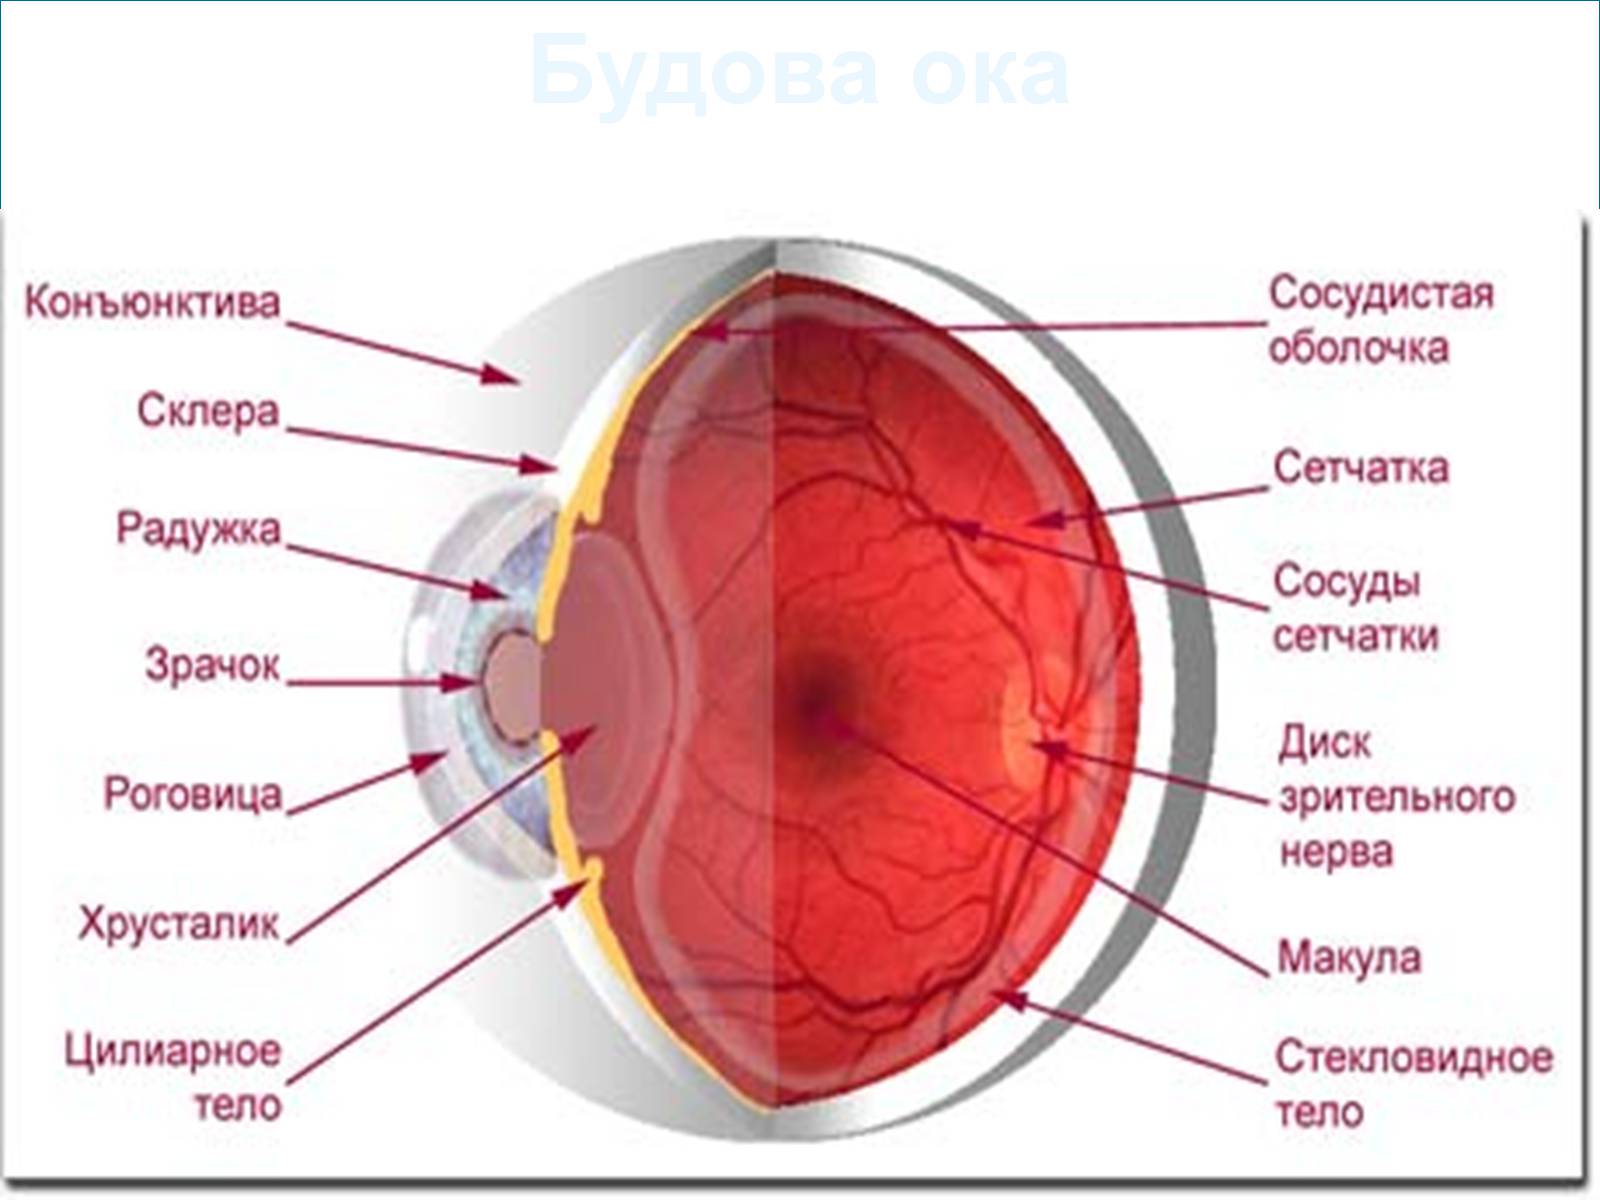 Тест сетчатки глаза. Сосудистая оболочка глаза. Глаз в разрезе. Анатомия глаза.